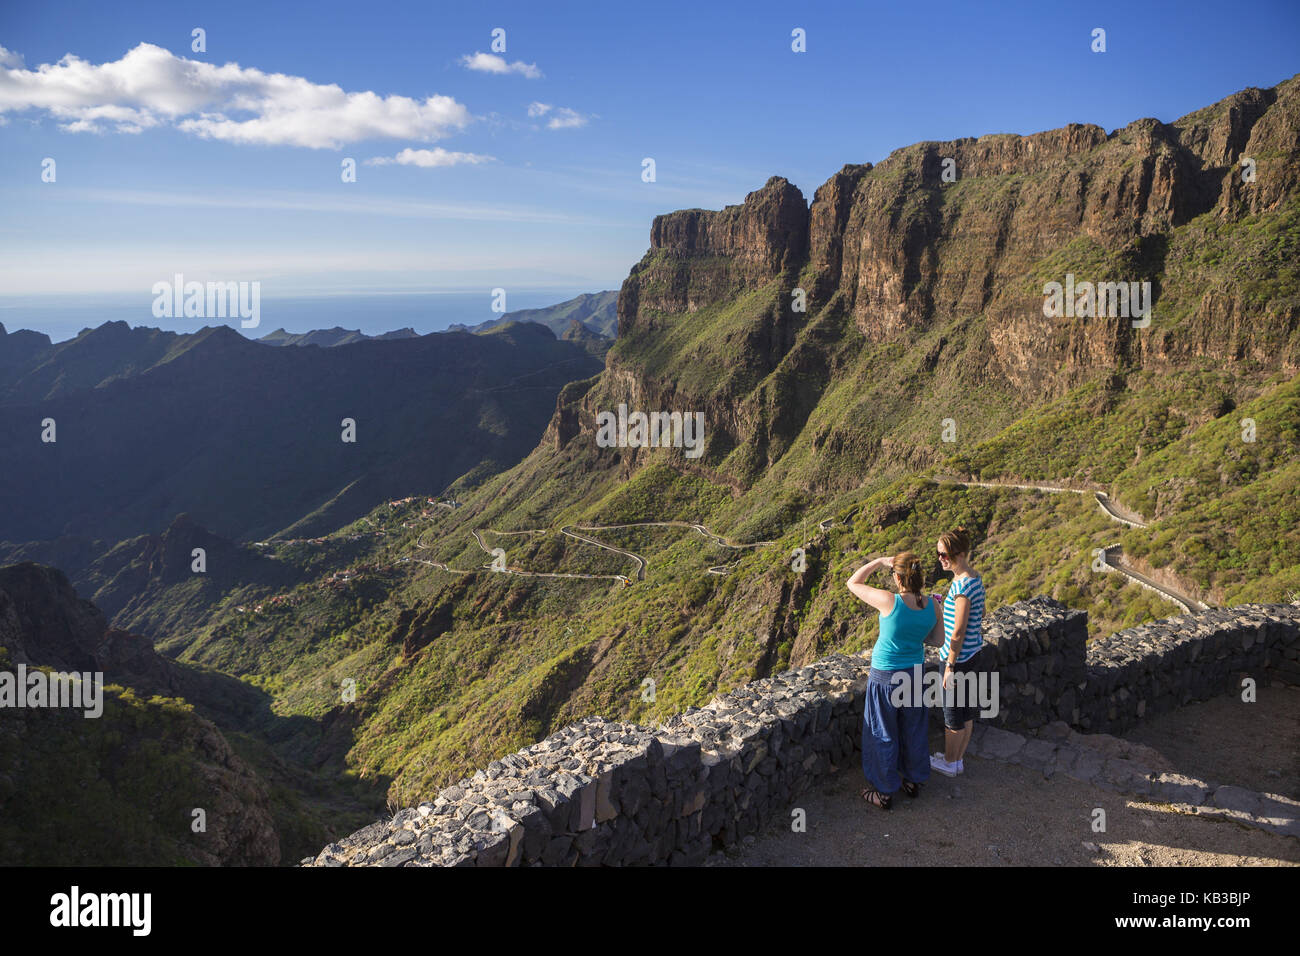 Spanien, Kanarische Inseln, Teneriffa, masca Gulch, Aussichtspunkt, Touristen, Blick auf das Tal, Stockfoto